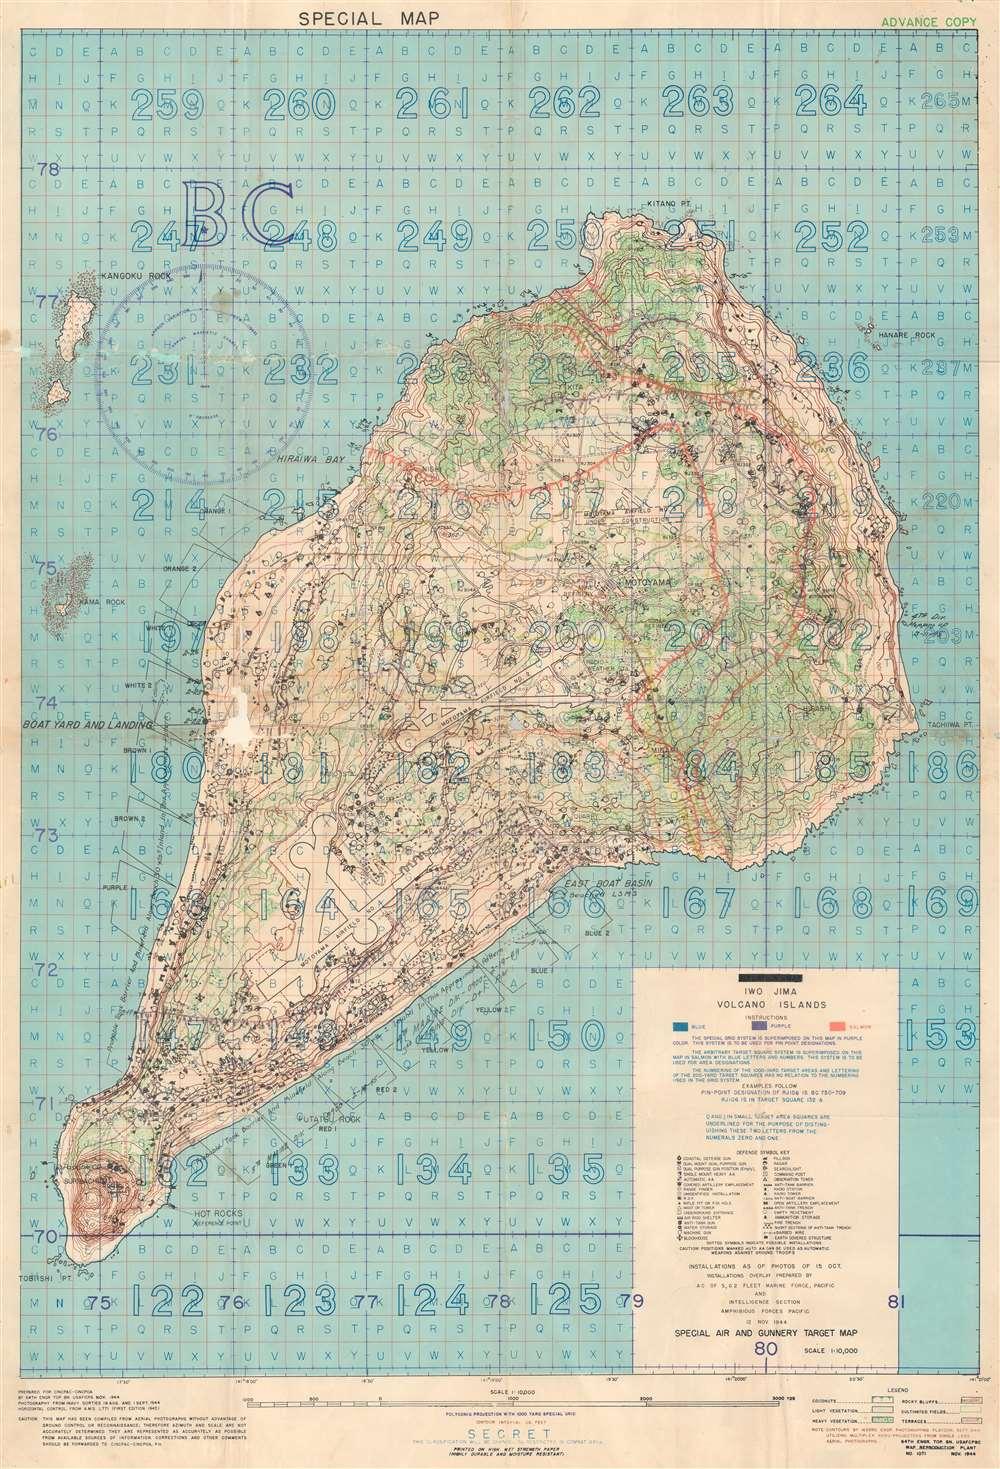 Iwo Jima Memorial Map